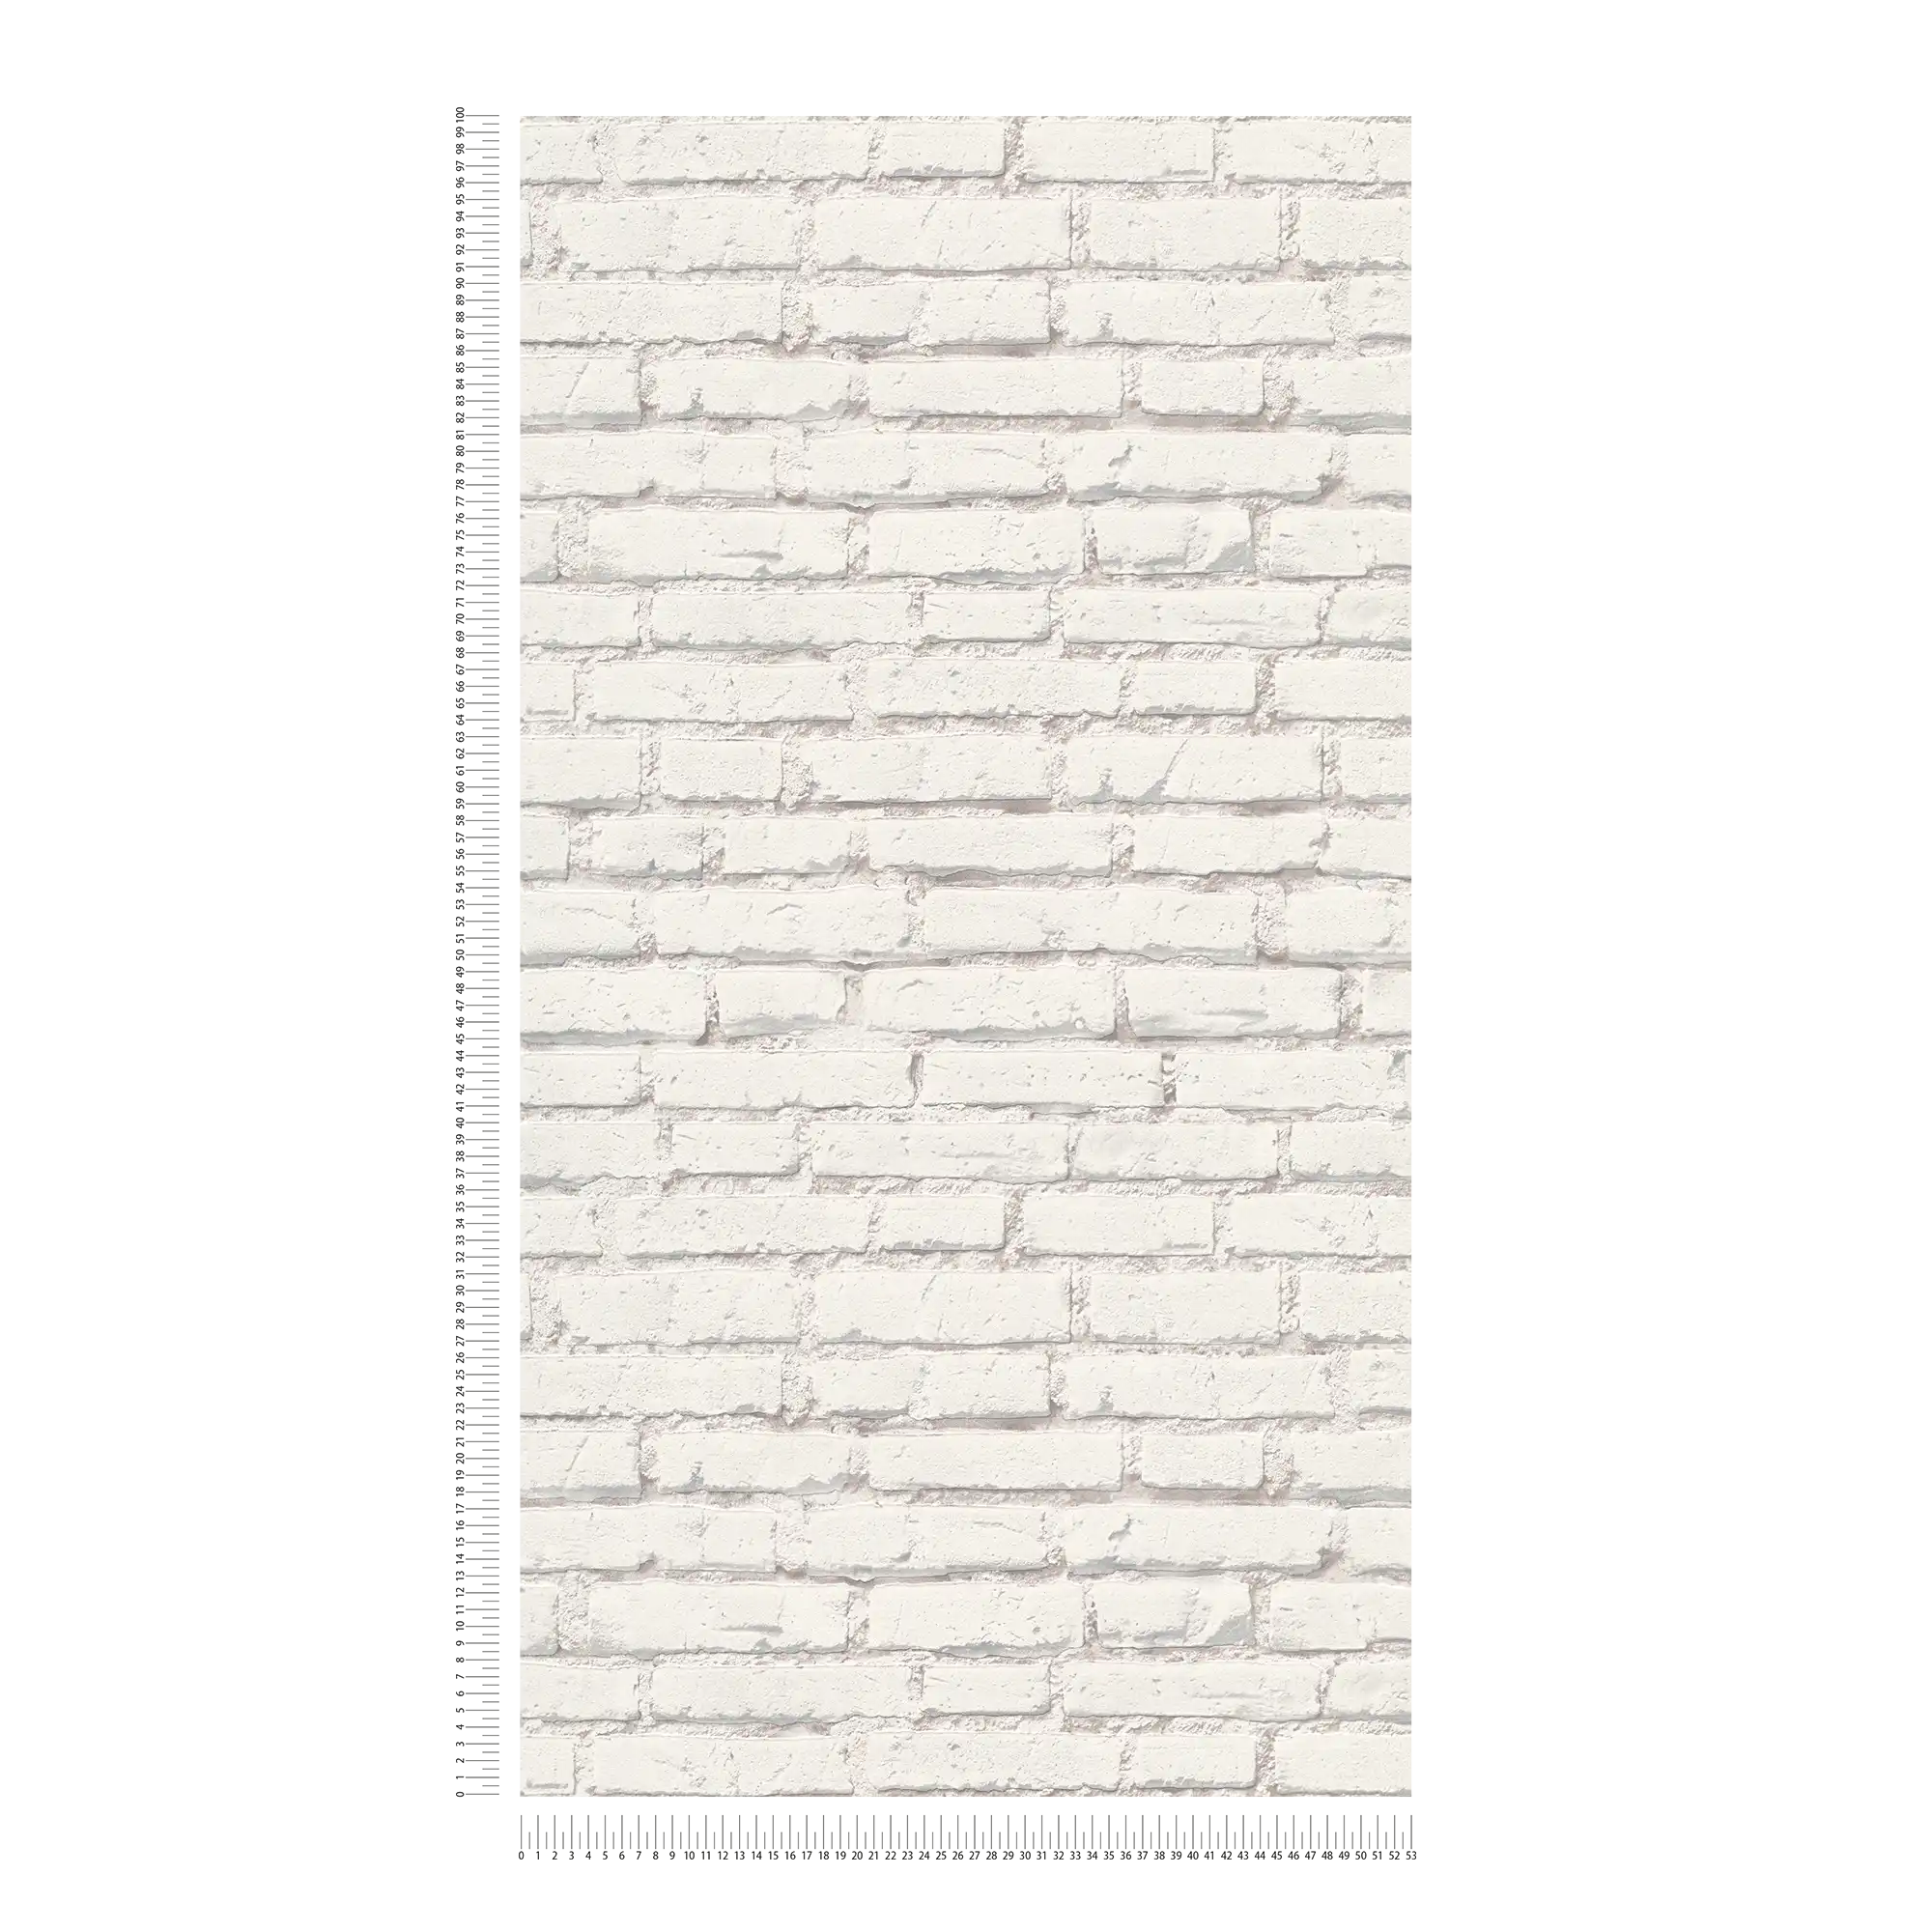             Papier peint mur de briques avec pierres blanches et joints - blanc, gris
        